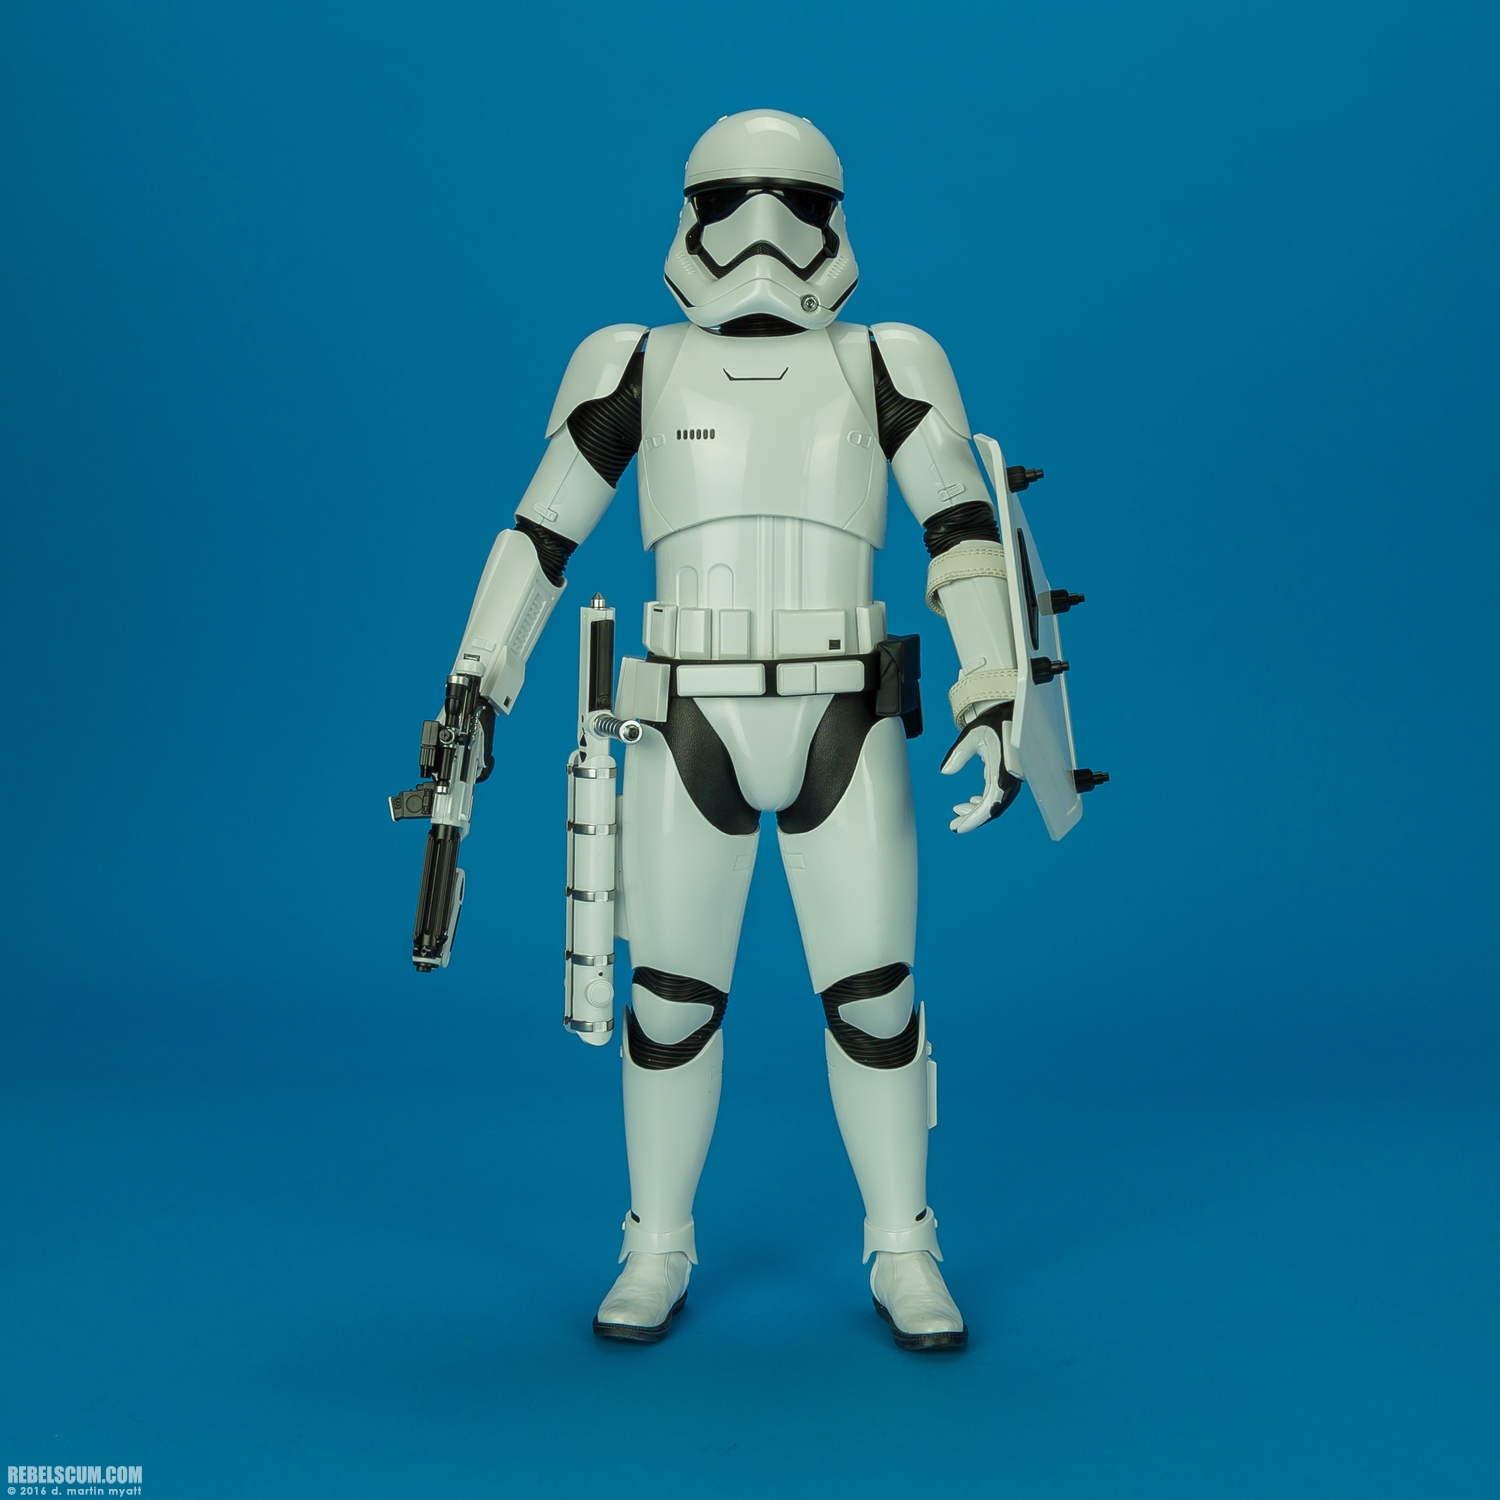 MMS346-Finn-First-Order-Riot-control-Stormtrooper-Hot-Toys-031.jpg